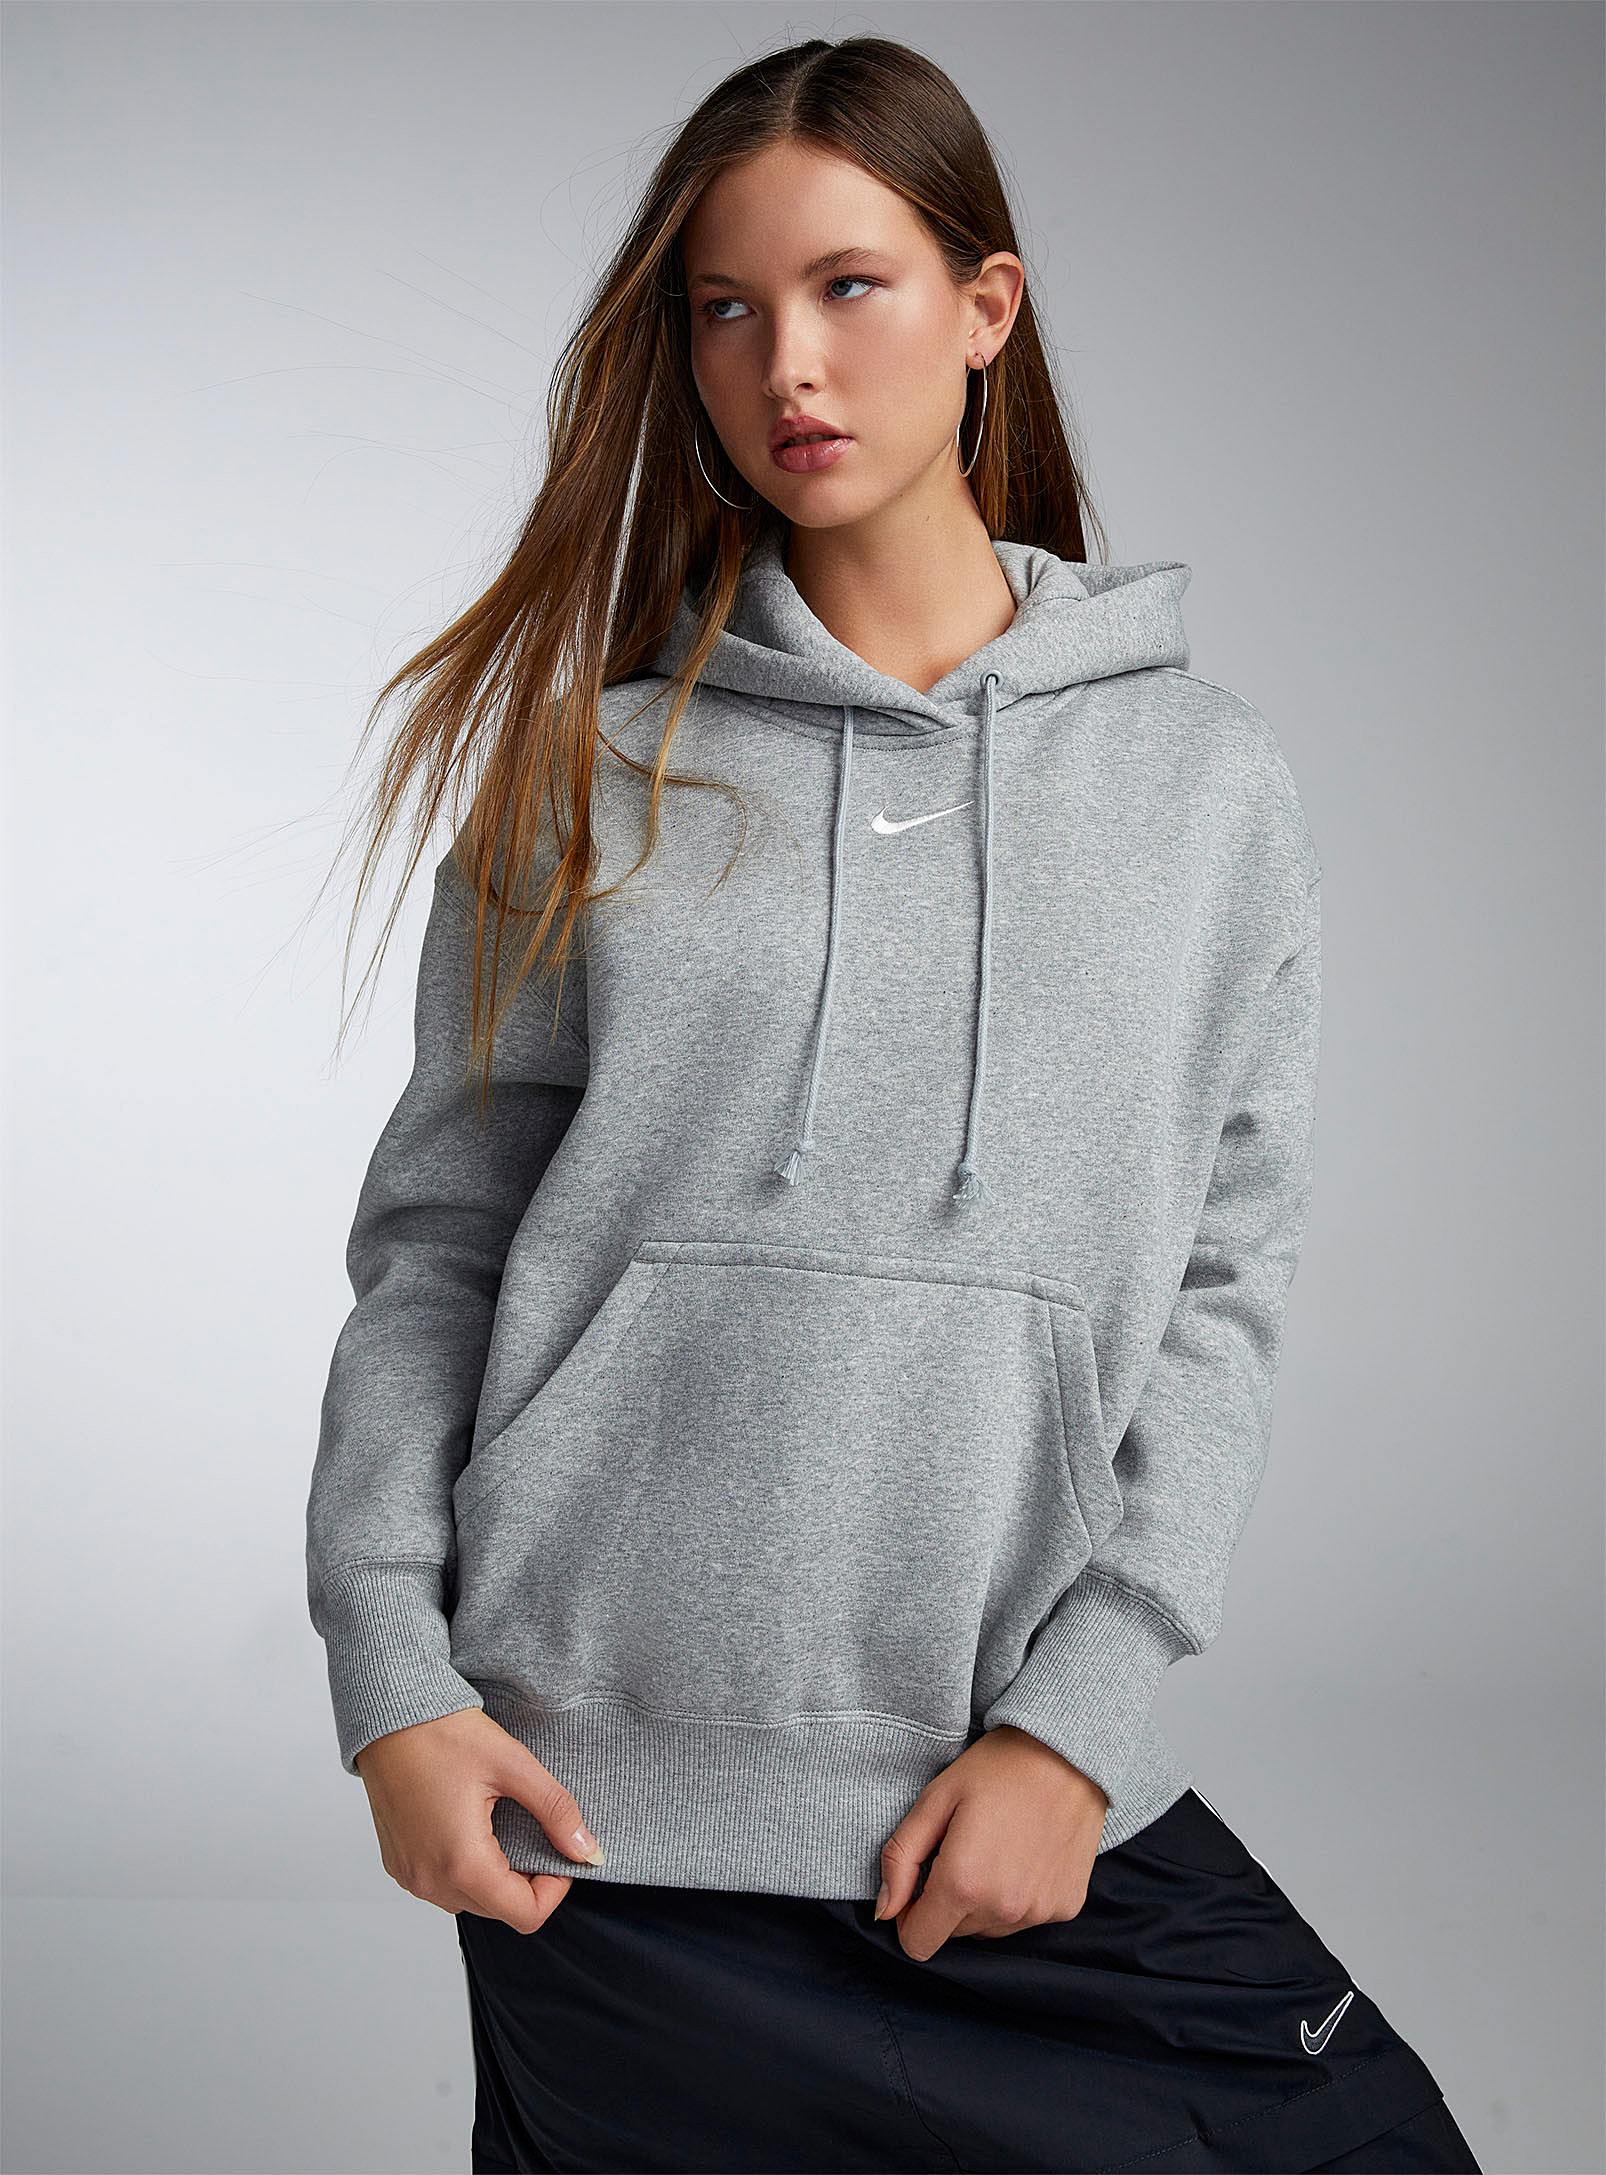 Nike - Women's Contrasting logo loose hoodie